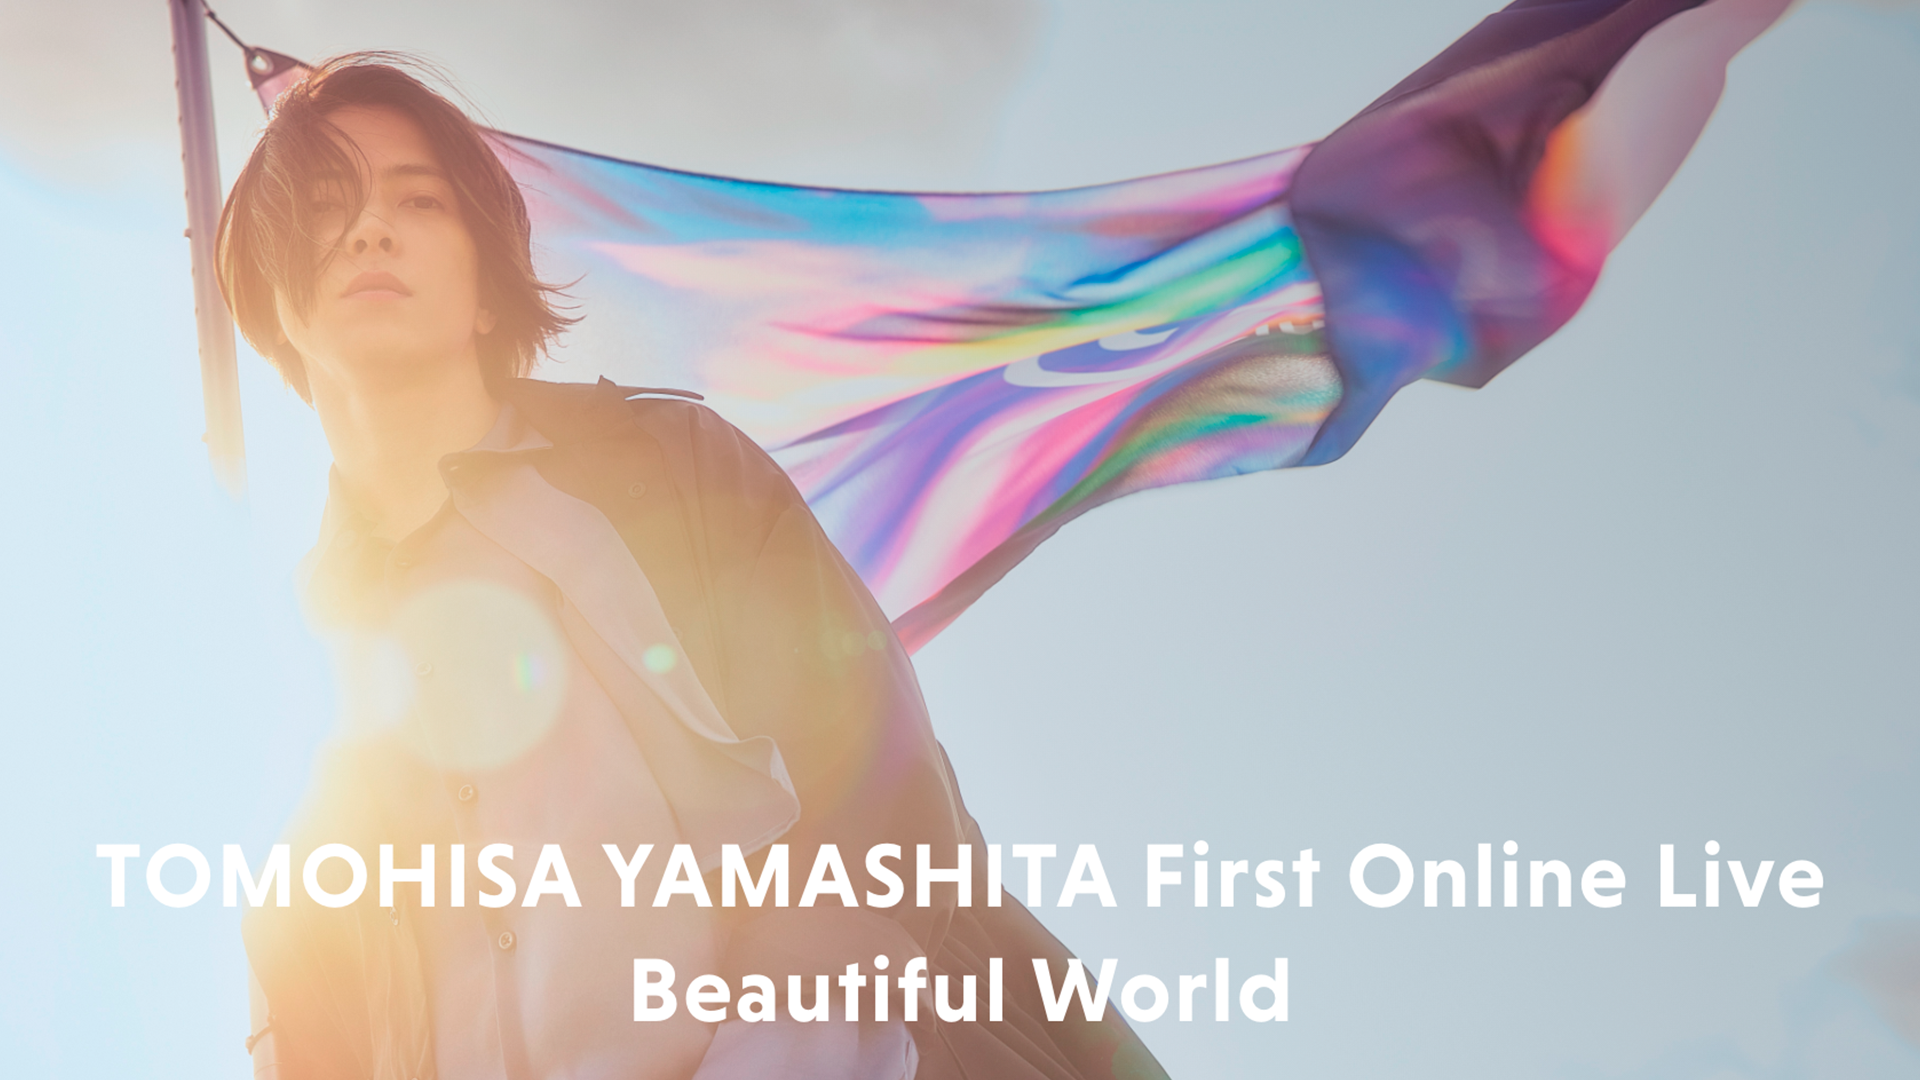 abema-ppv-online-live%e3%80%8ctomohisa-yamashita-first-online-live-beautiful-world%e3%80%8d